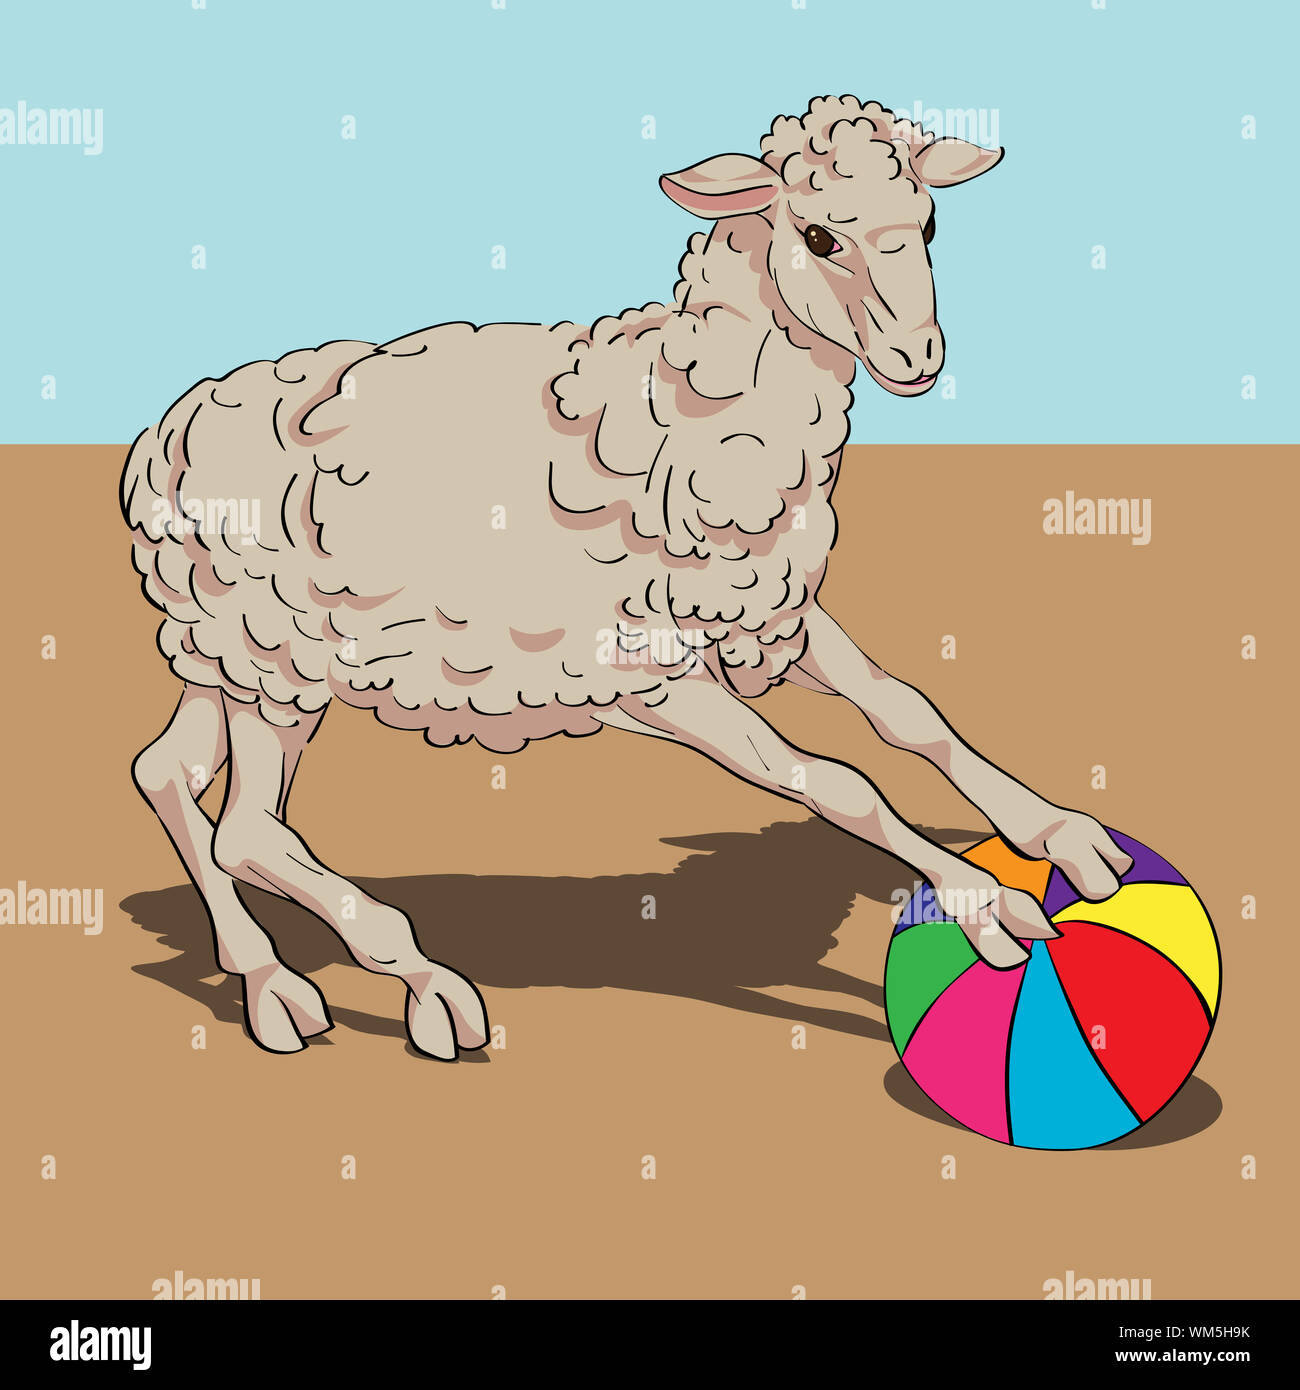 La balle de jeu de moutons, carte à la main sur une illustration vintage fond coloré Banque D'Images